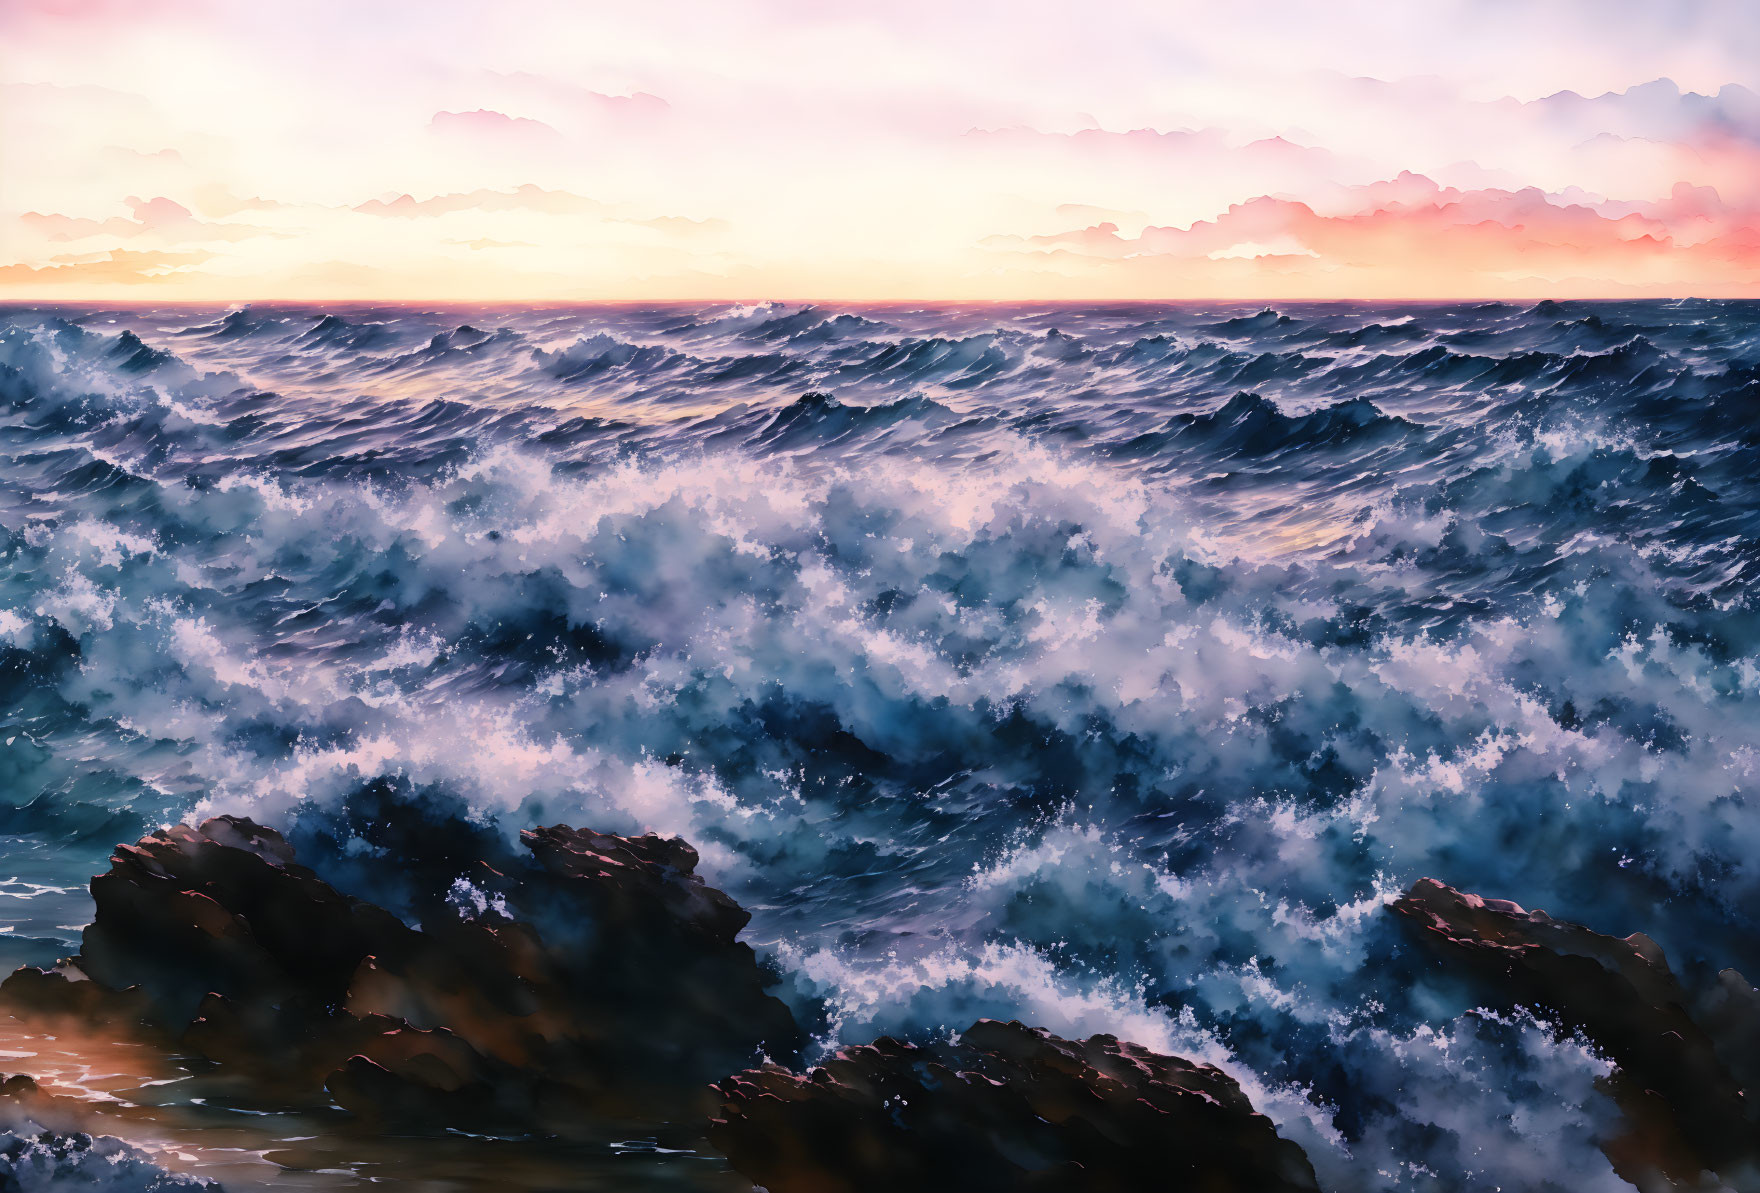 Vibrant sunset with crashing waves against rocks